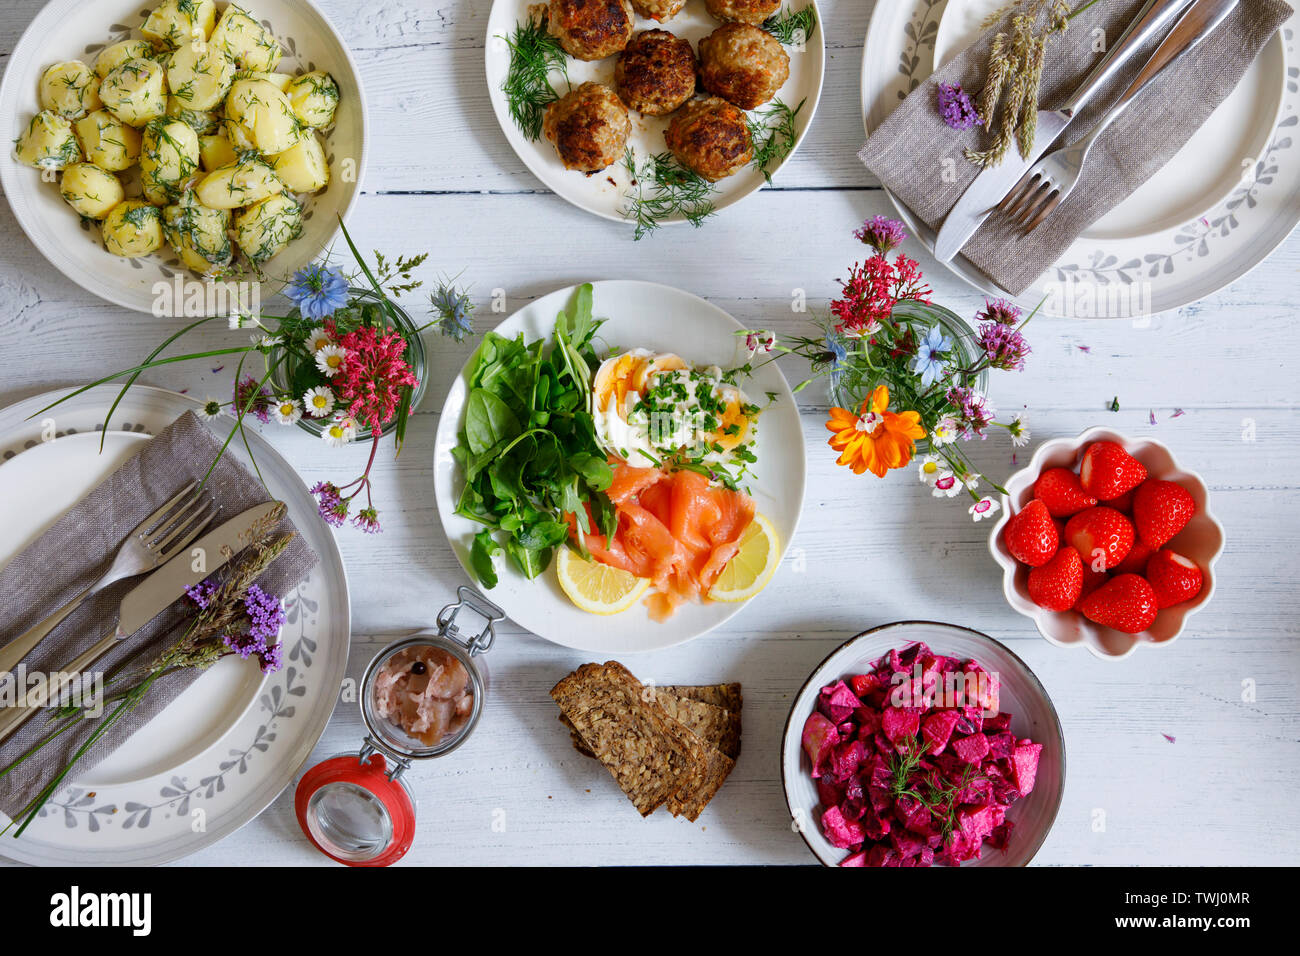 Songe d'une fête scandinave avec la salade de pommes de terre, boulettes de viande, de saumon et de betterave Banque D'Images